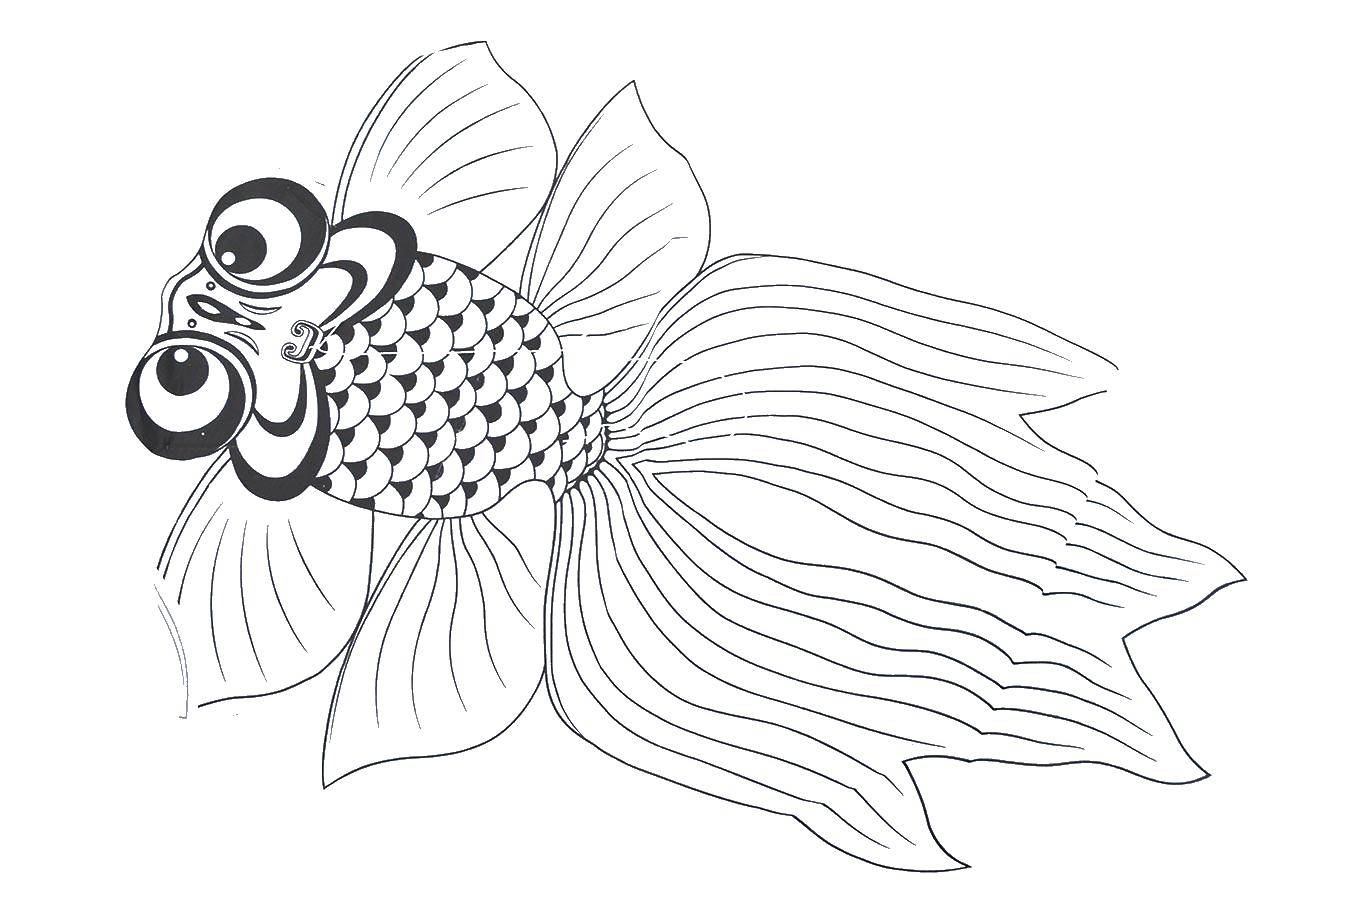 Опис: розмальовки  Золота рибка з великими очима. Категорія: повітряний змій. Теги:  золота рибка, телескопів.